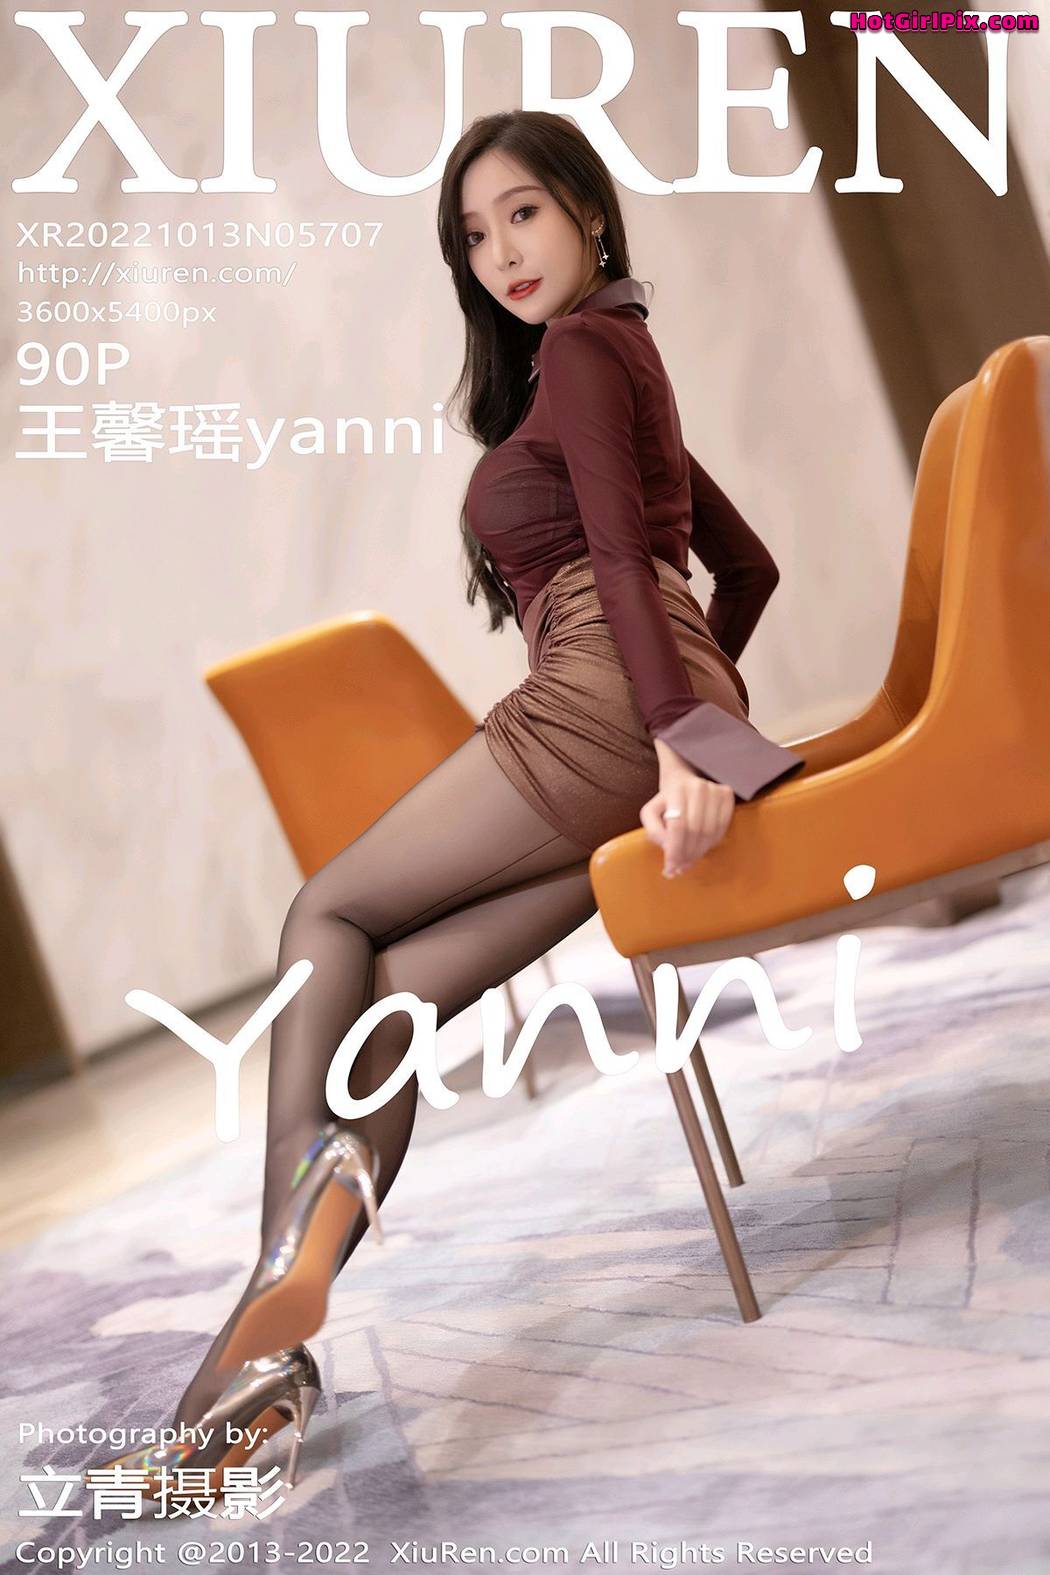 [XIUREN] No.5707 Wang Xin Yao 王馨瑶yanni